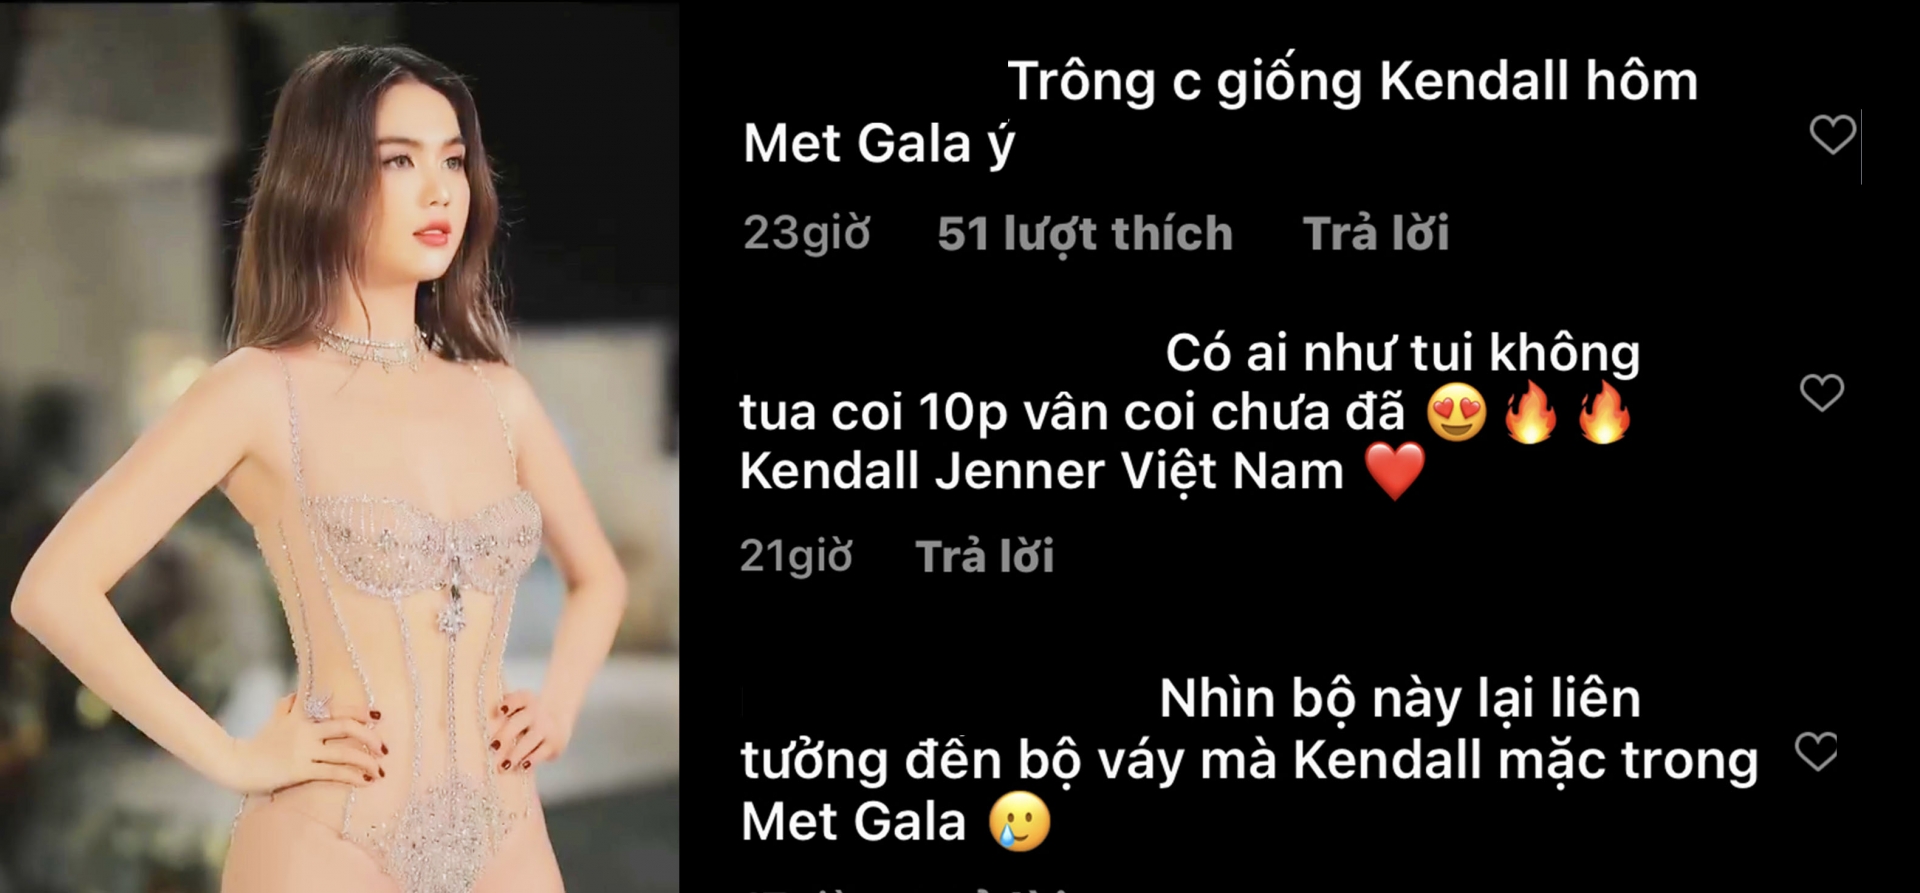 Fan cô nàng cũng ồ ạt vào bình luận khen Ngọc Trinh xinh đẹp xuất thần, thậm chí còn gọi cô là 'Kendall Jenner Việt Nam'.